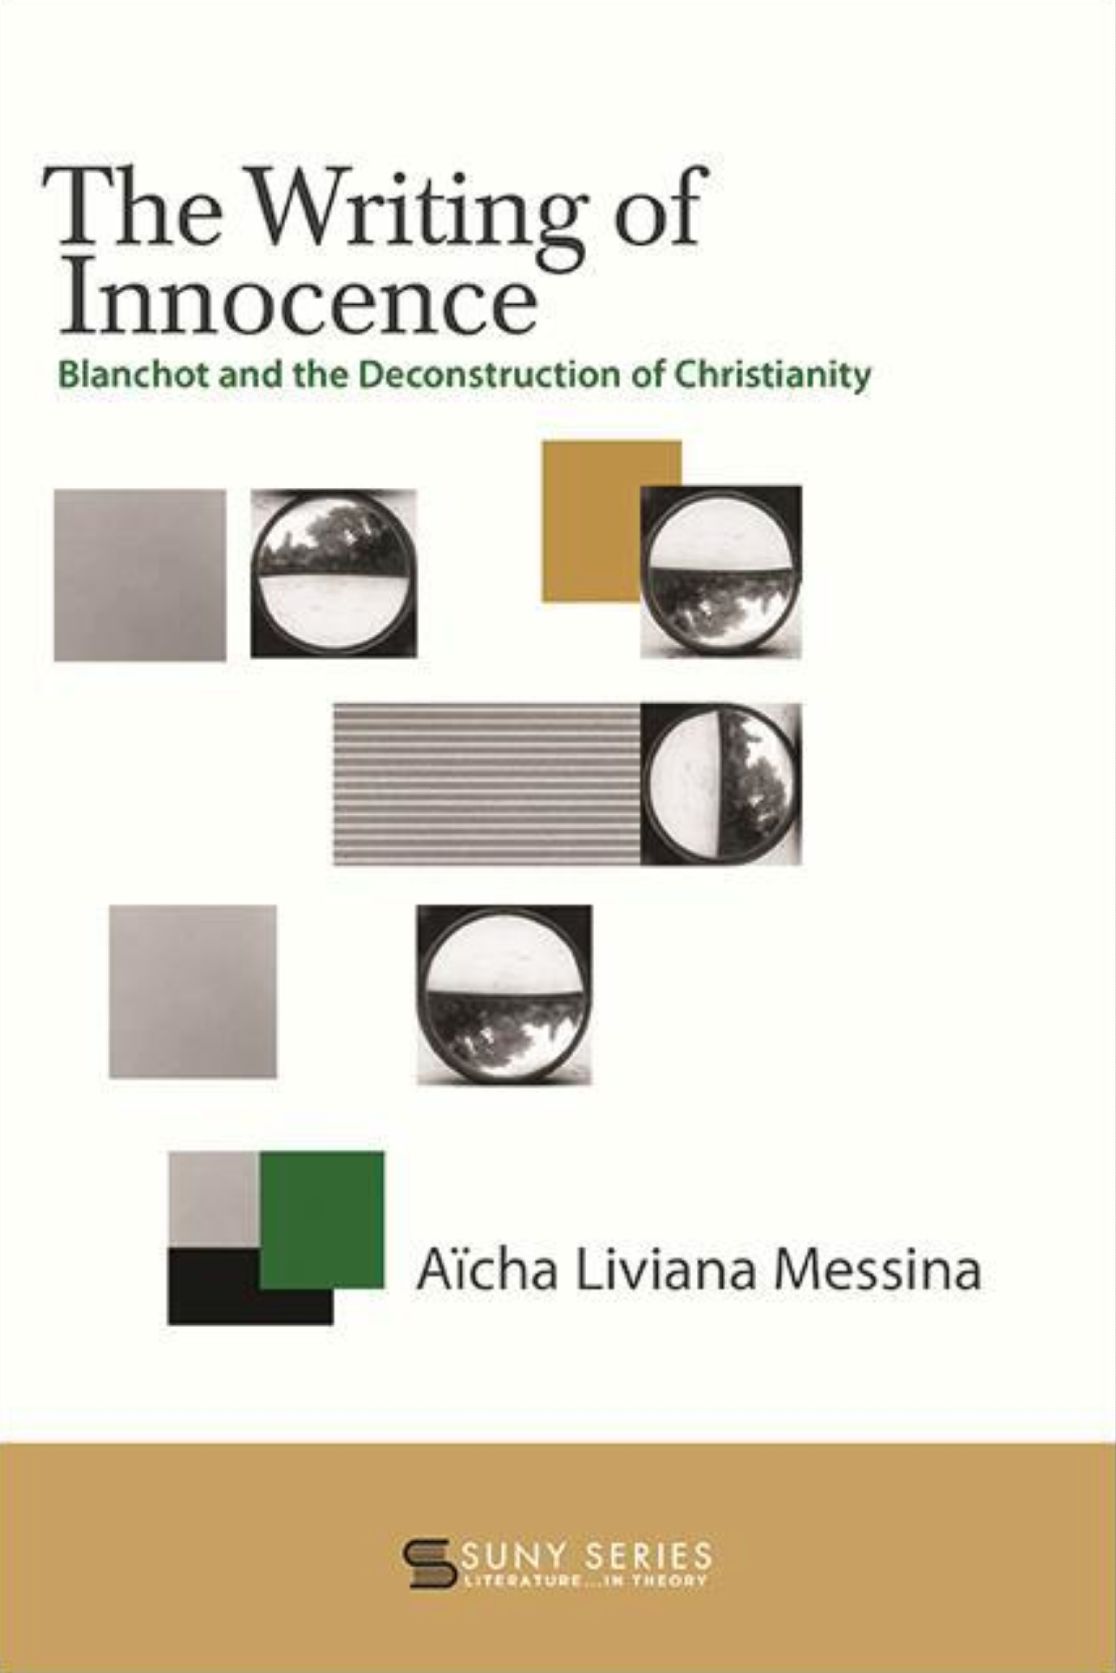 New public lecture: Aïcha Liviana Messina